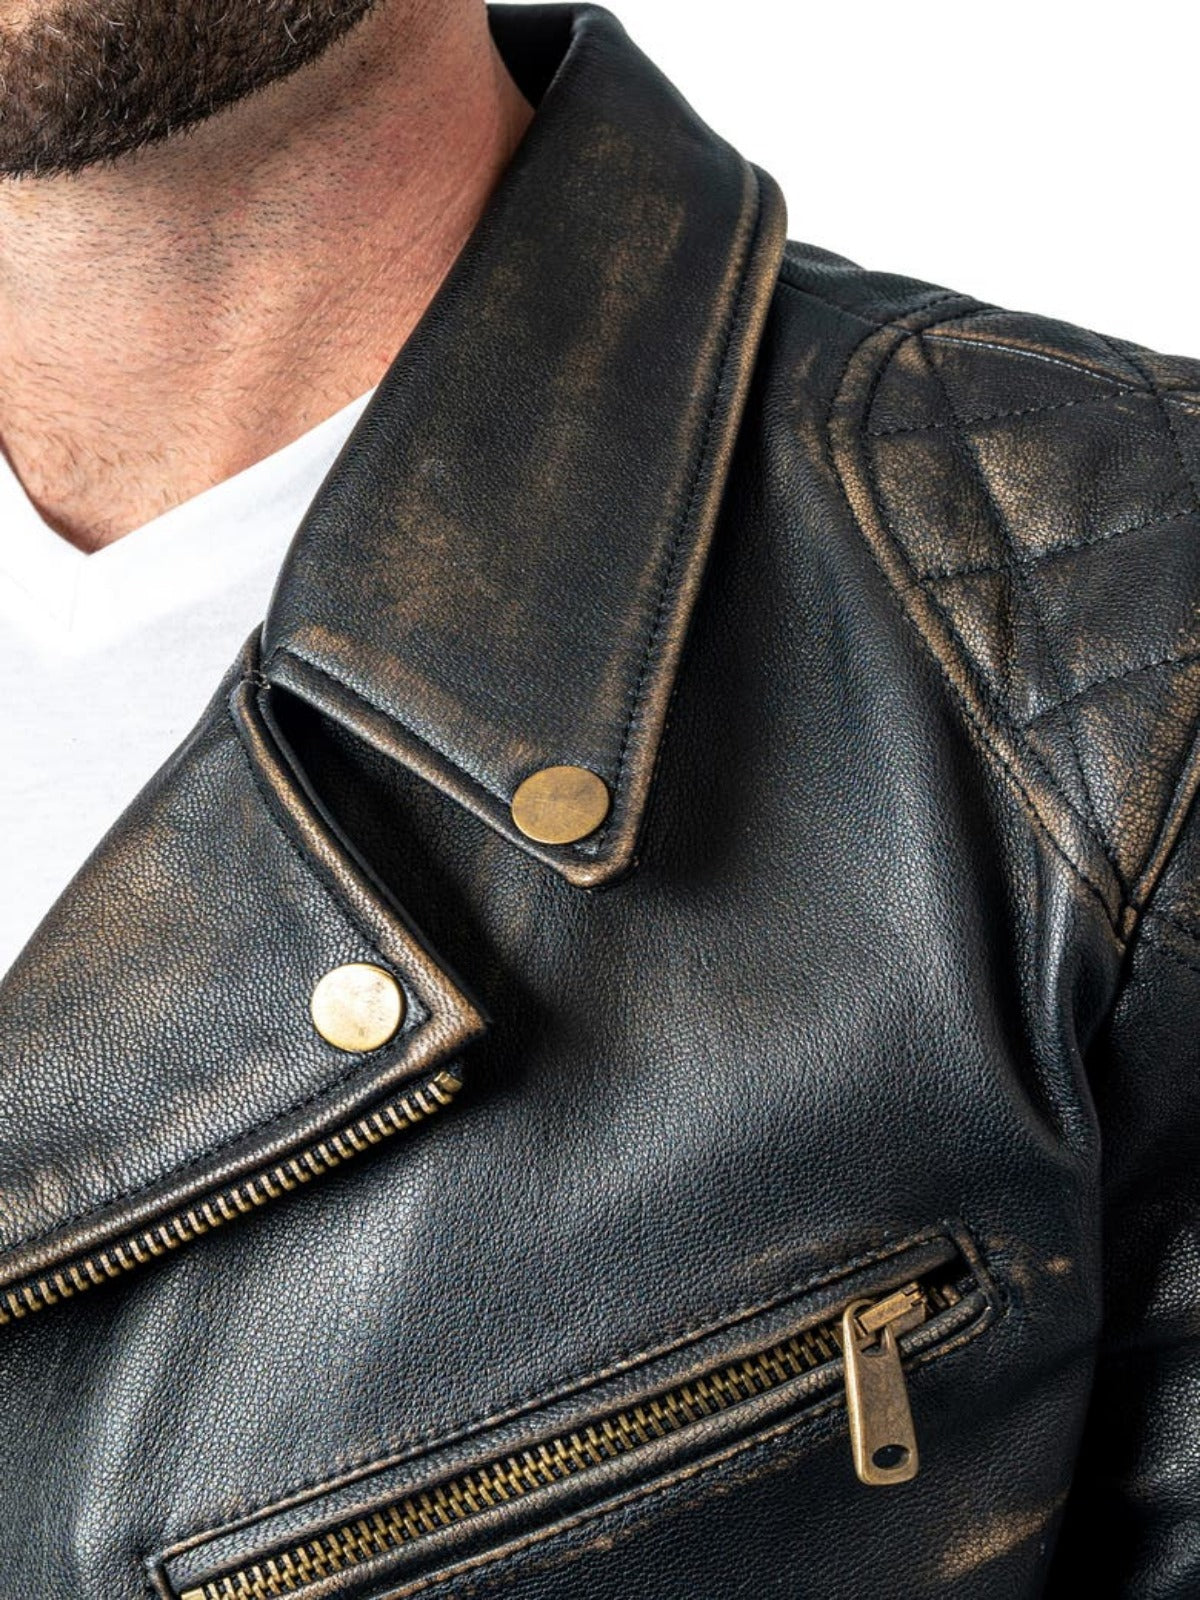 Mens Black Distressed Leather Biker Jacket